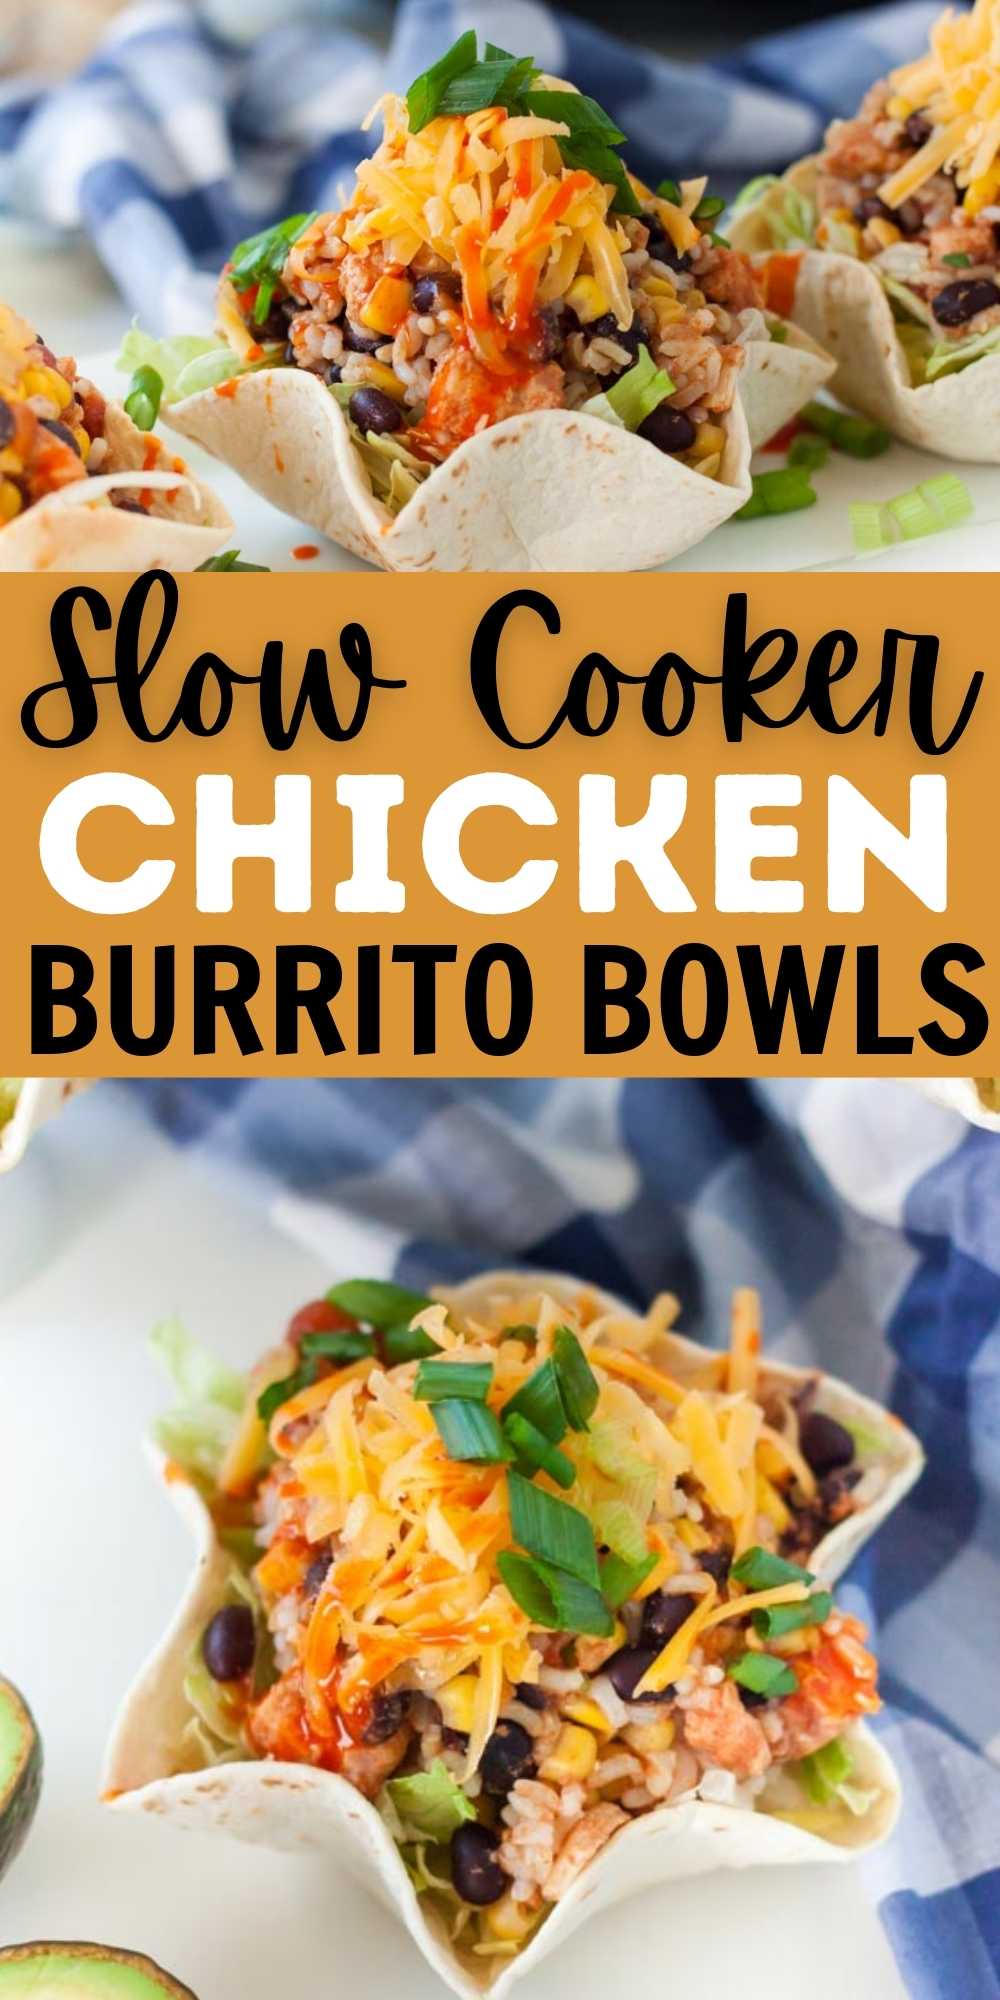 https://www.eatingonadime.com/wp-content/uploads/2022/07/Slow-Cooker-Chicken-Burrito-Bowls-3.jpg